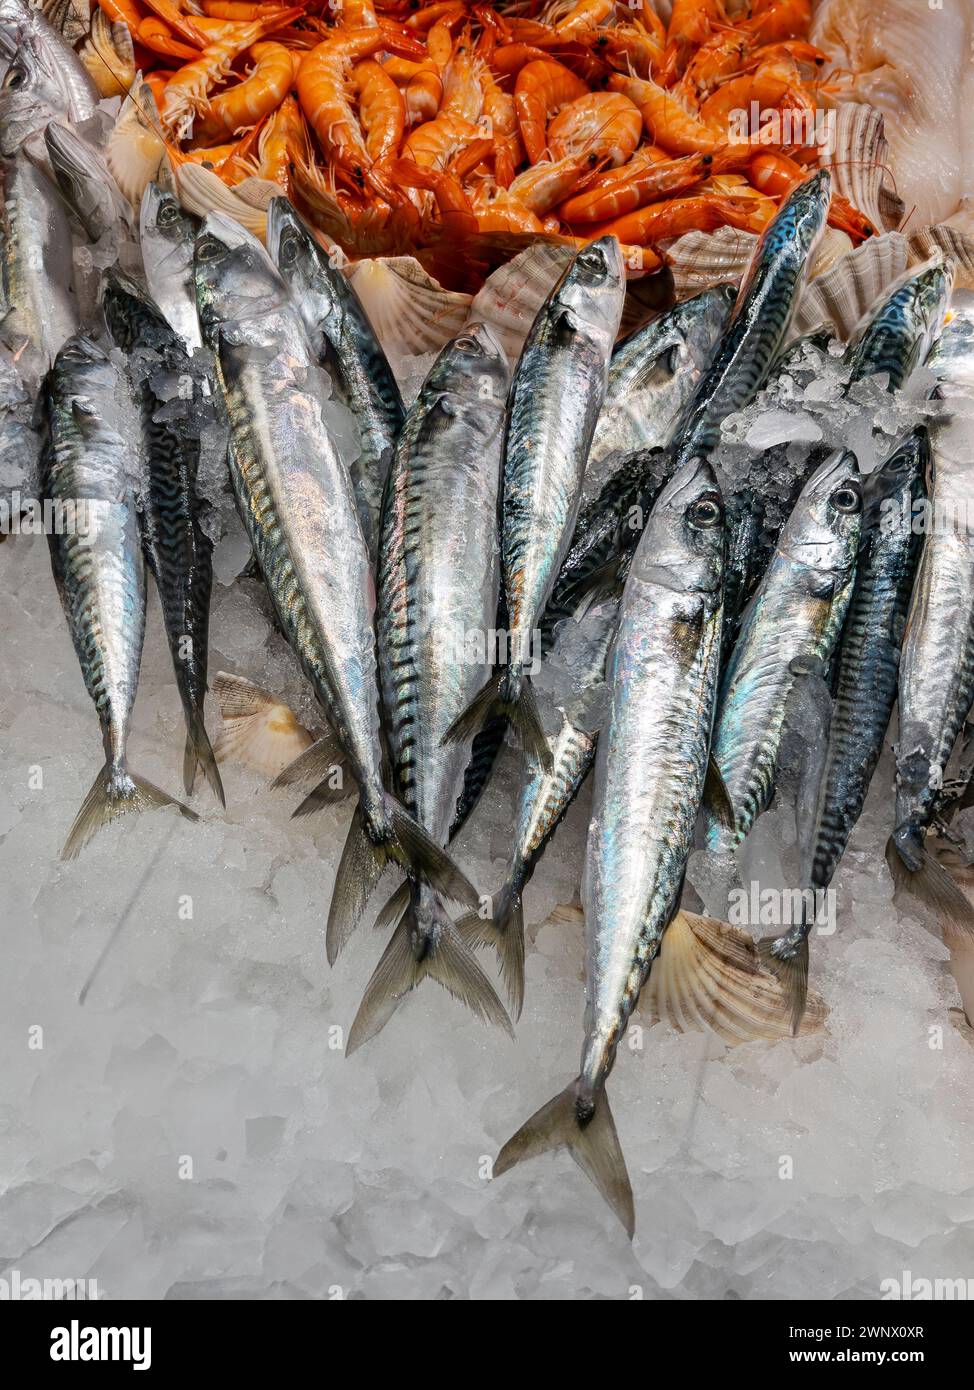 Sgombro fresco esposto su ghiaccio tritato con gamberi sullo sfondo sul bancone del pescivendolo Foto Stock